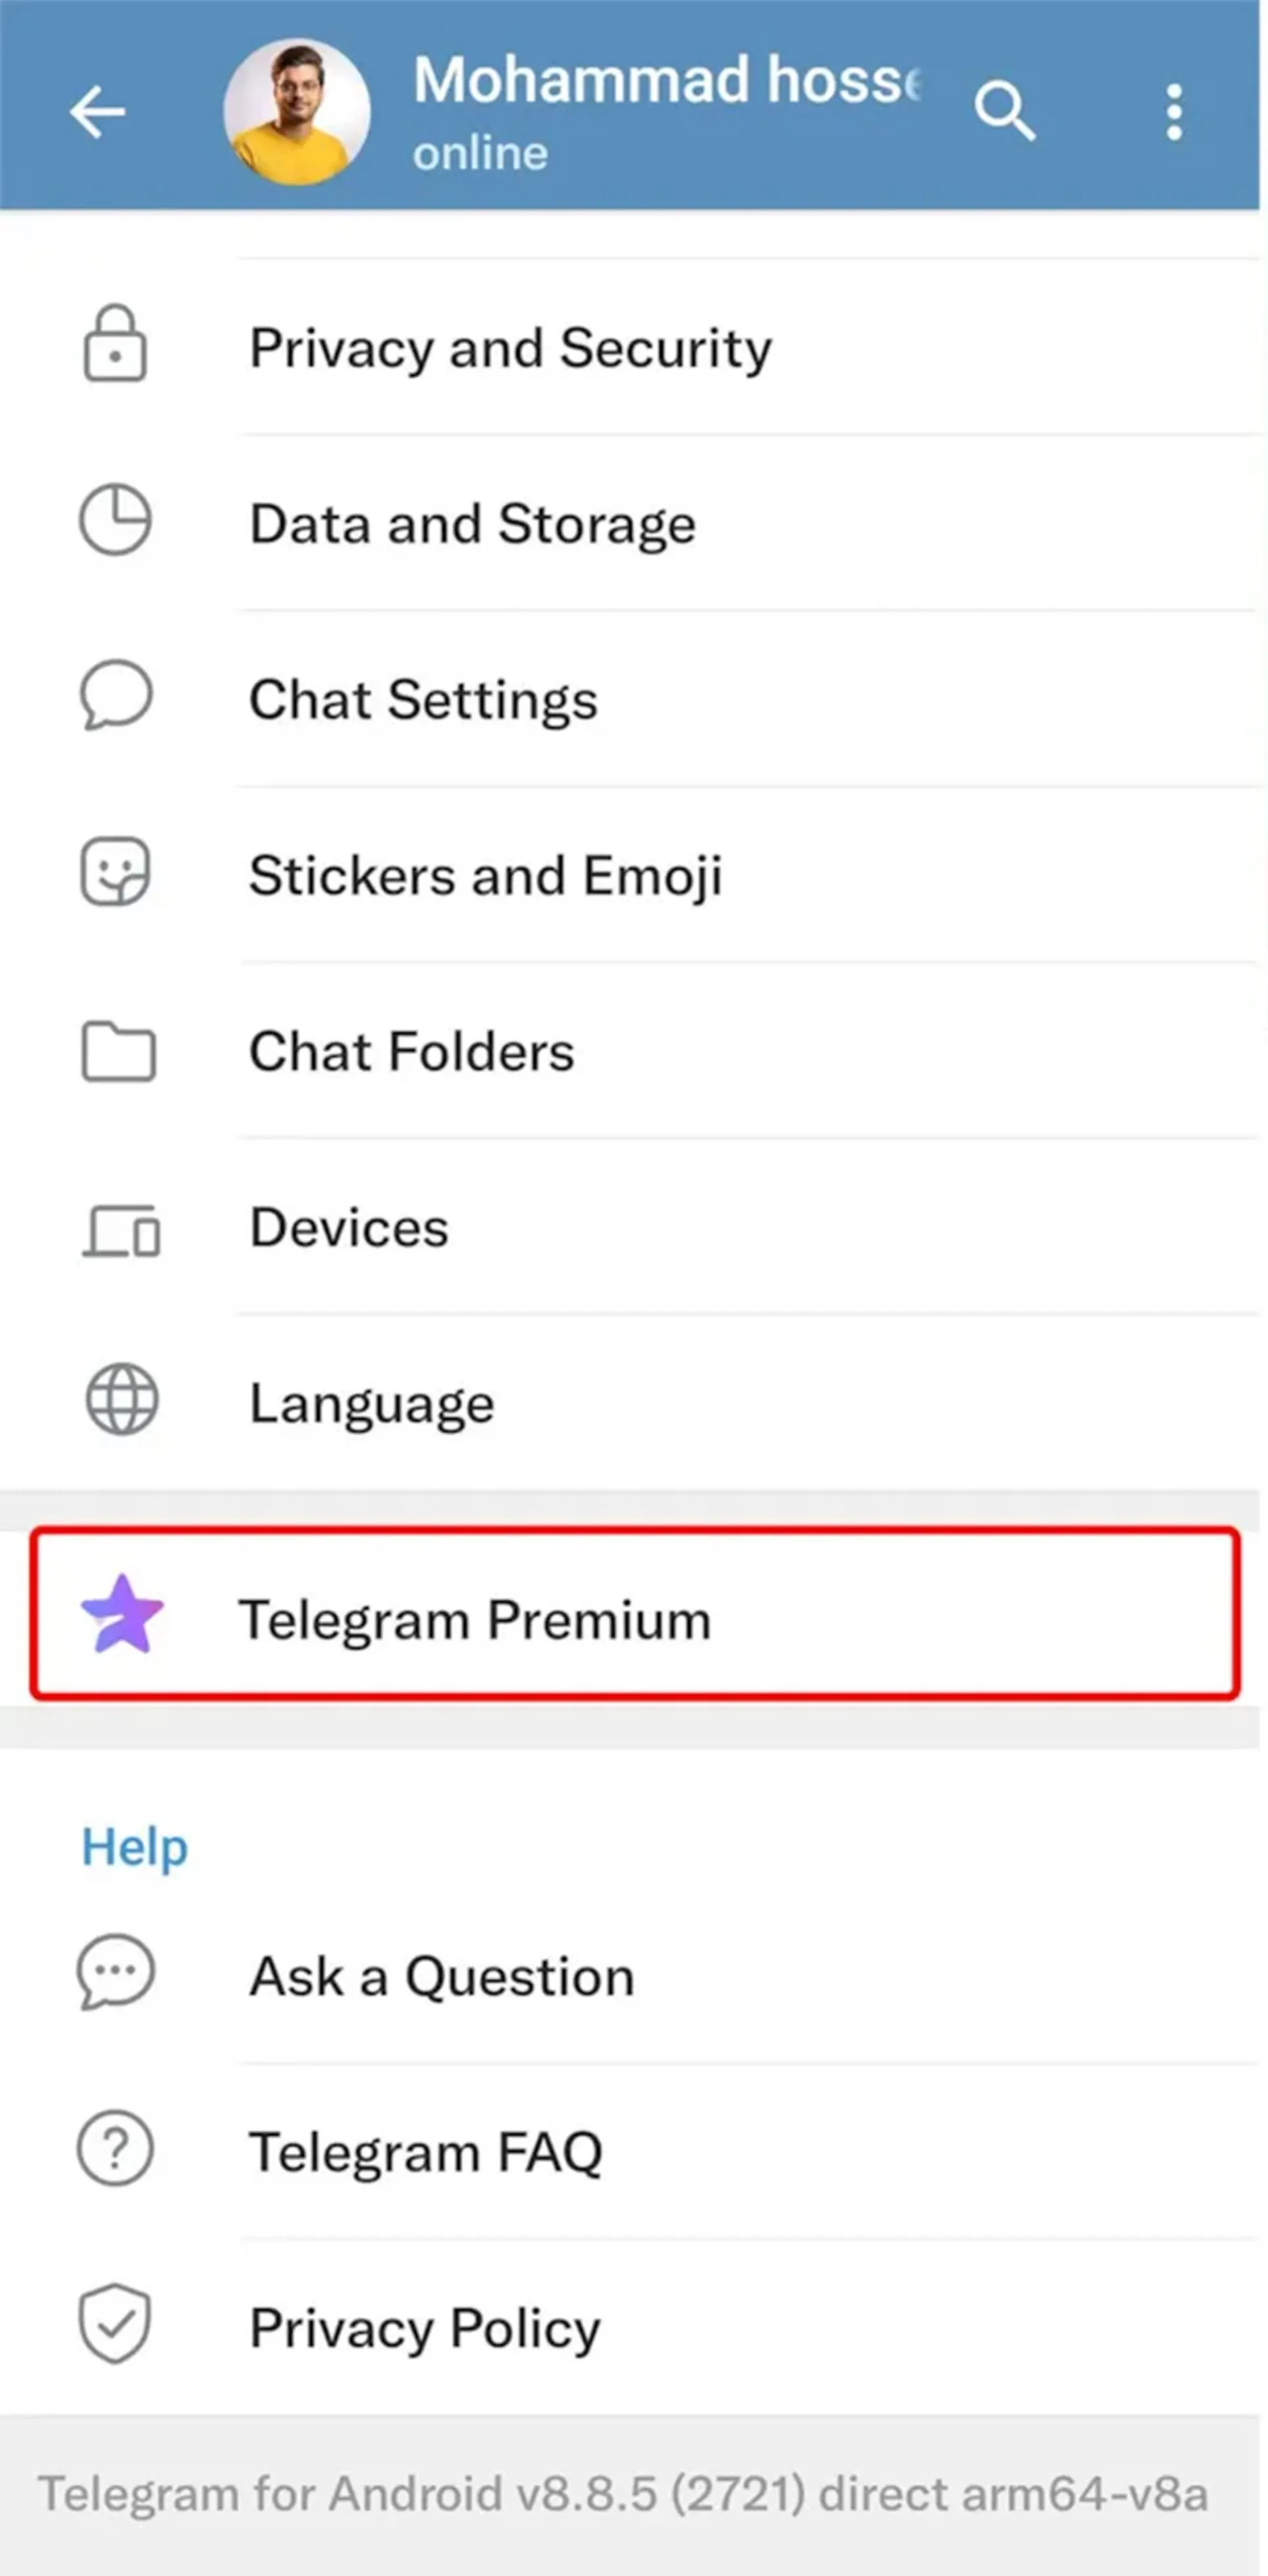 کلیک روی گزینه تلگرام پریمیوم در صفحه تنظیمات